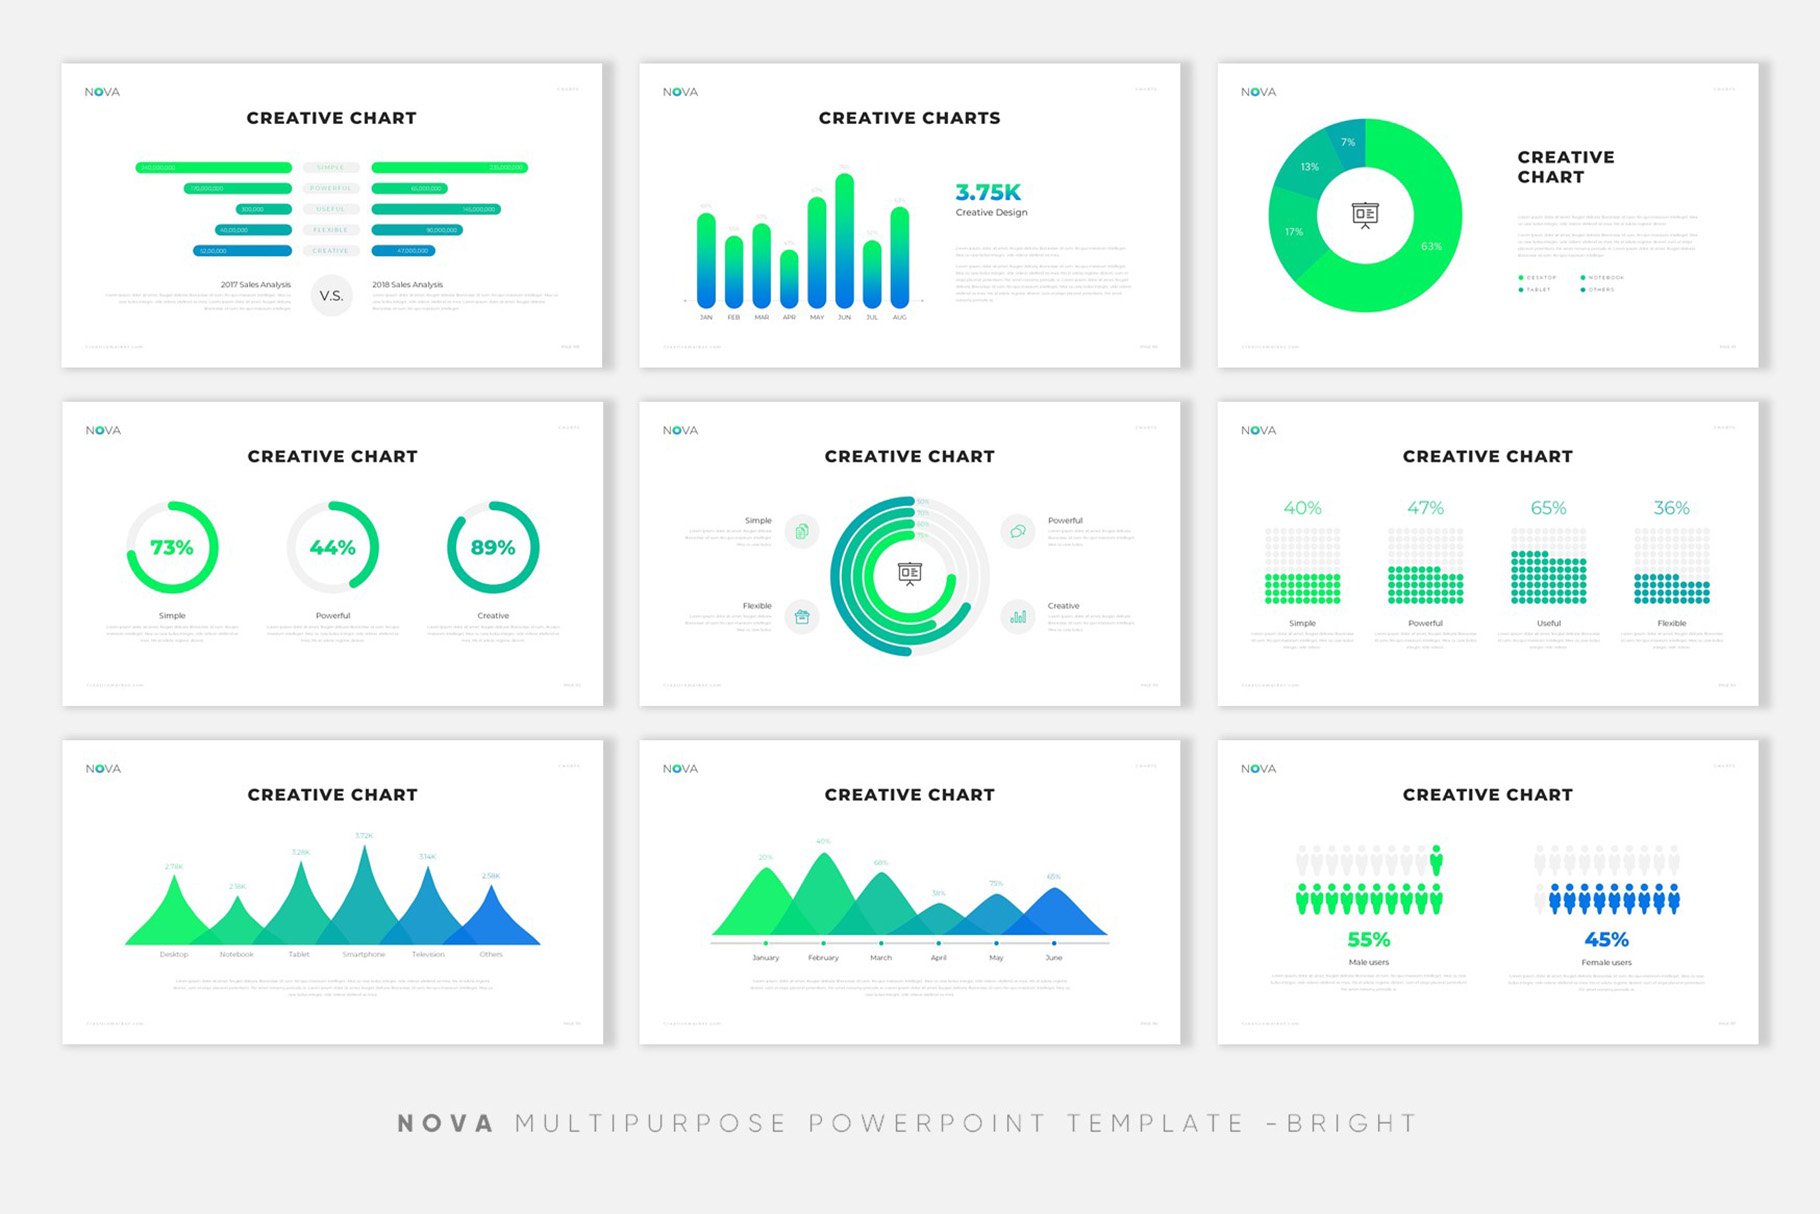 极简公司介绍项目业务策划PPT模板 NOVA Creative PowerPoint Template插图11